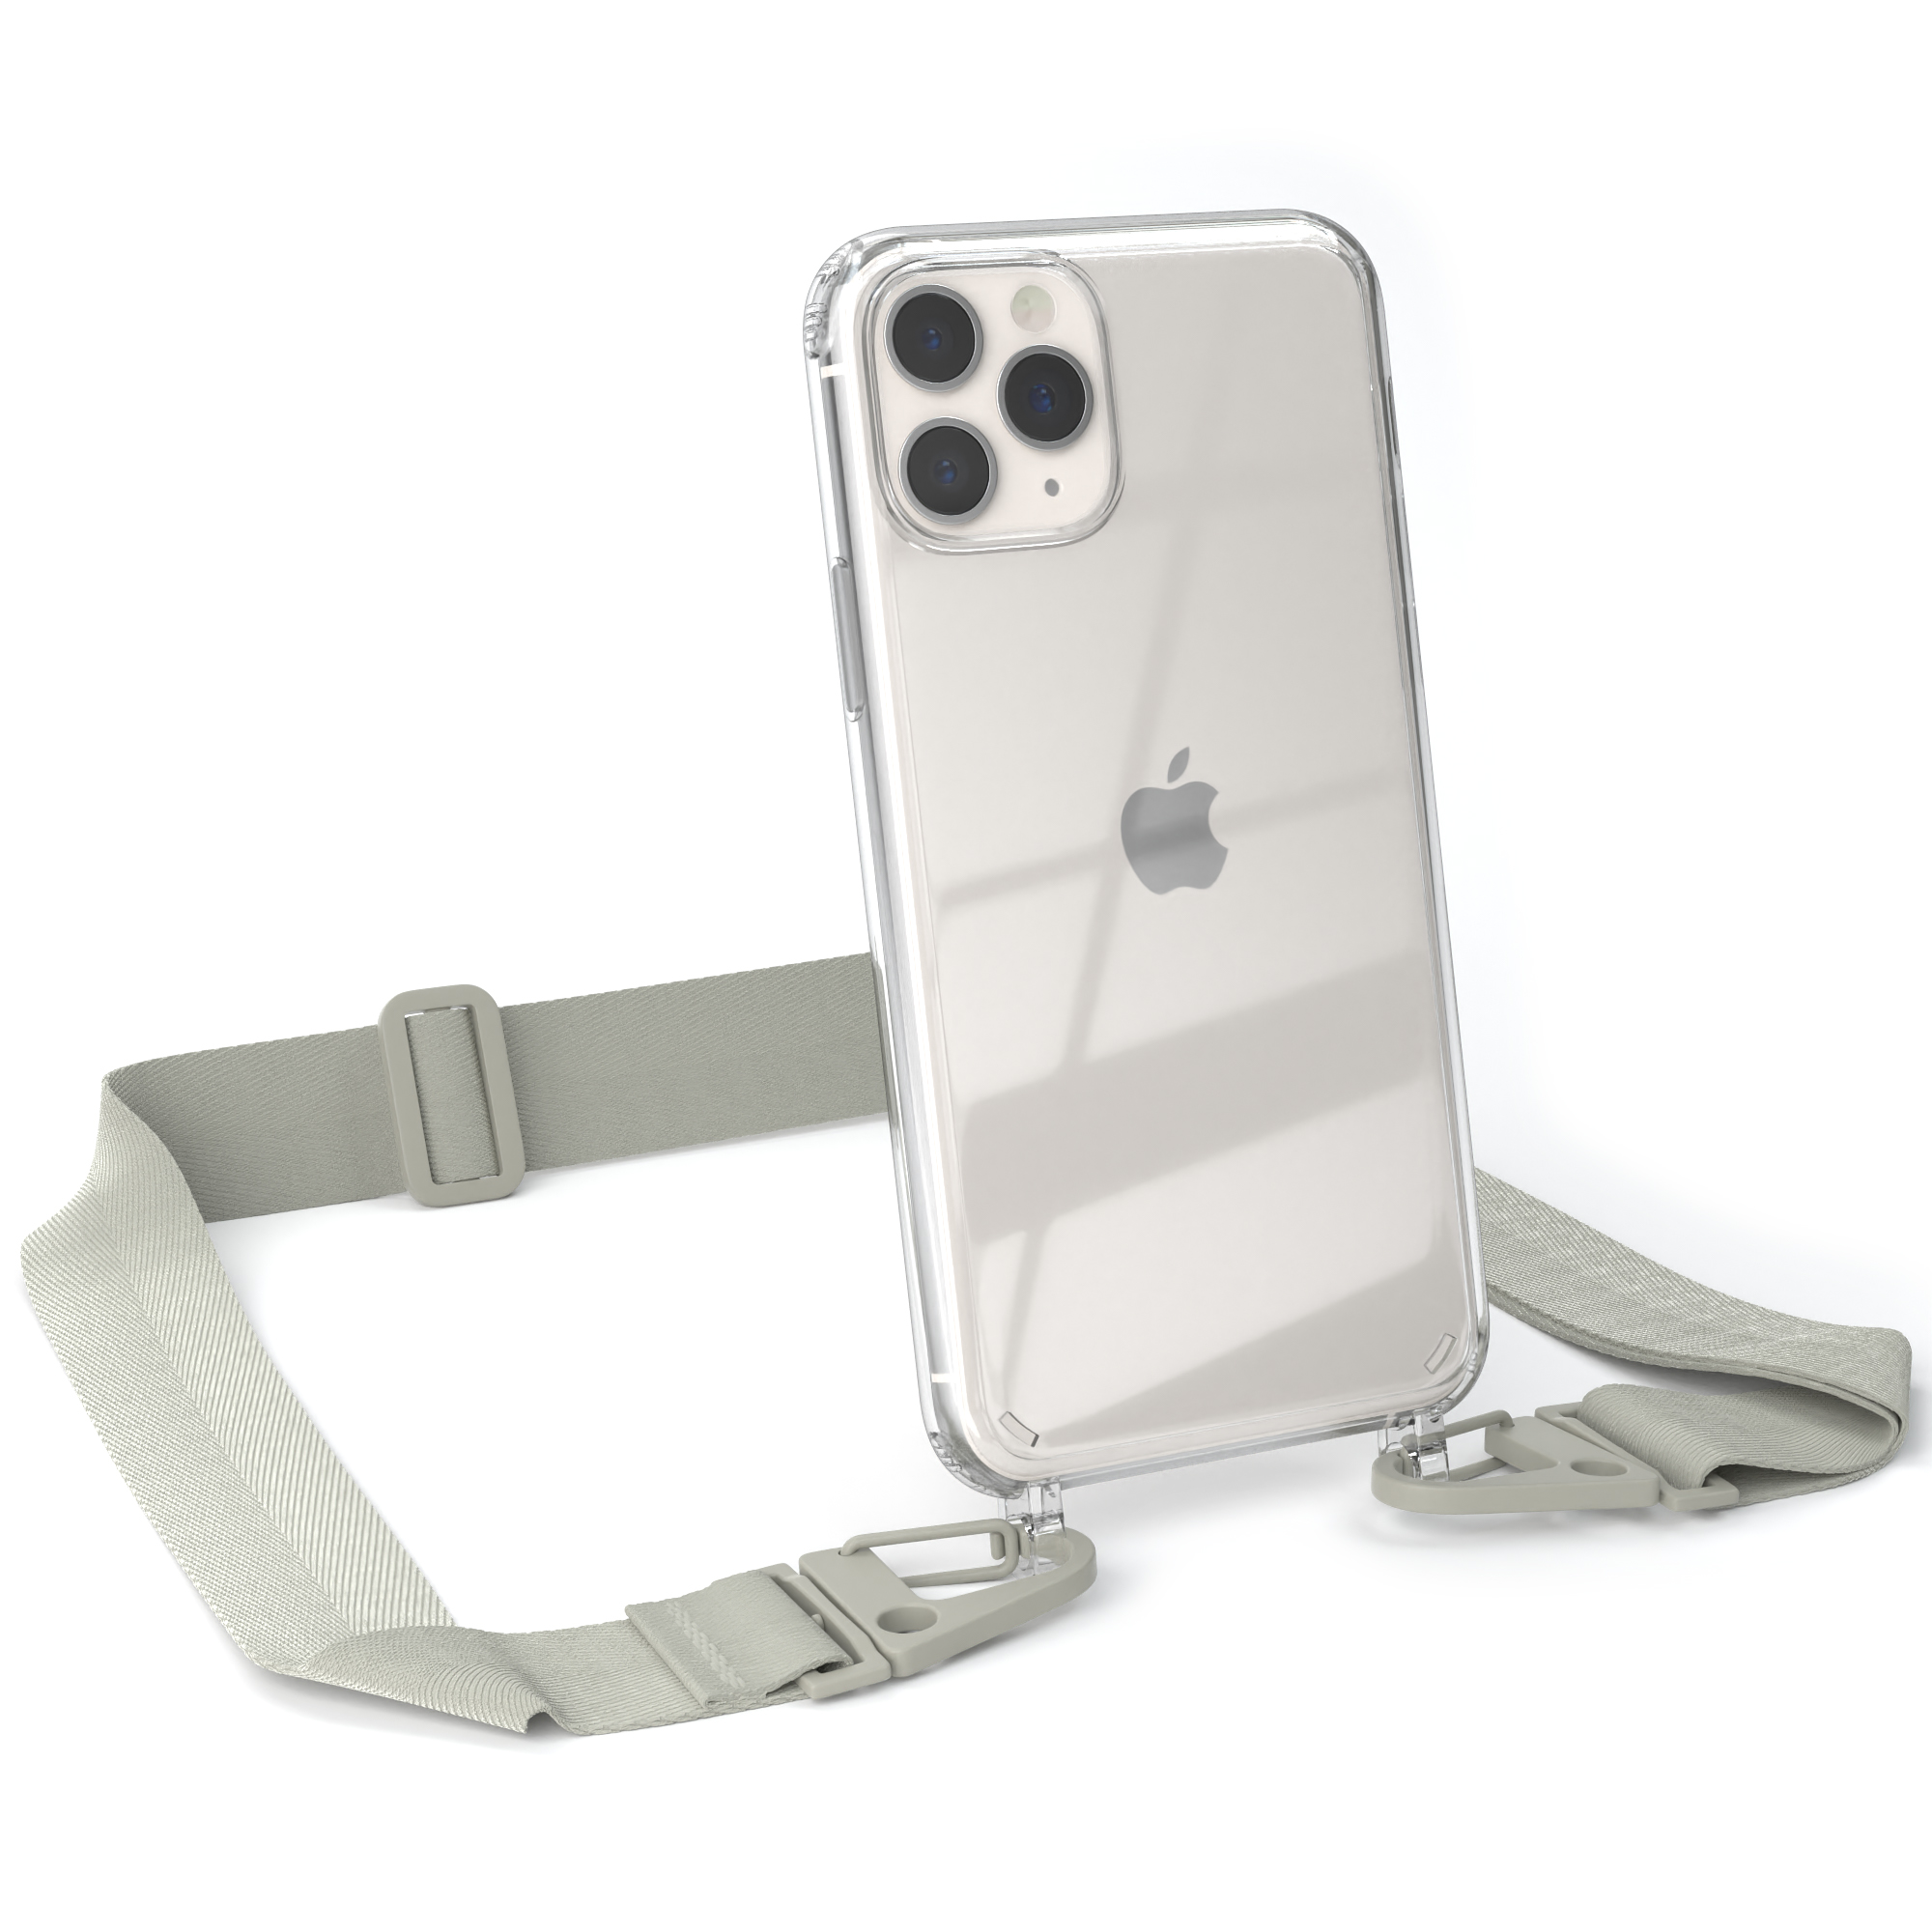 EAZY CASE Transparente Handyhülle mit Beige + Apple, / Grau 11 breiter iPhone Taupe Kordel Umhängetasche, Pro, Karabiner